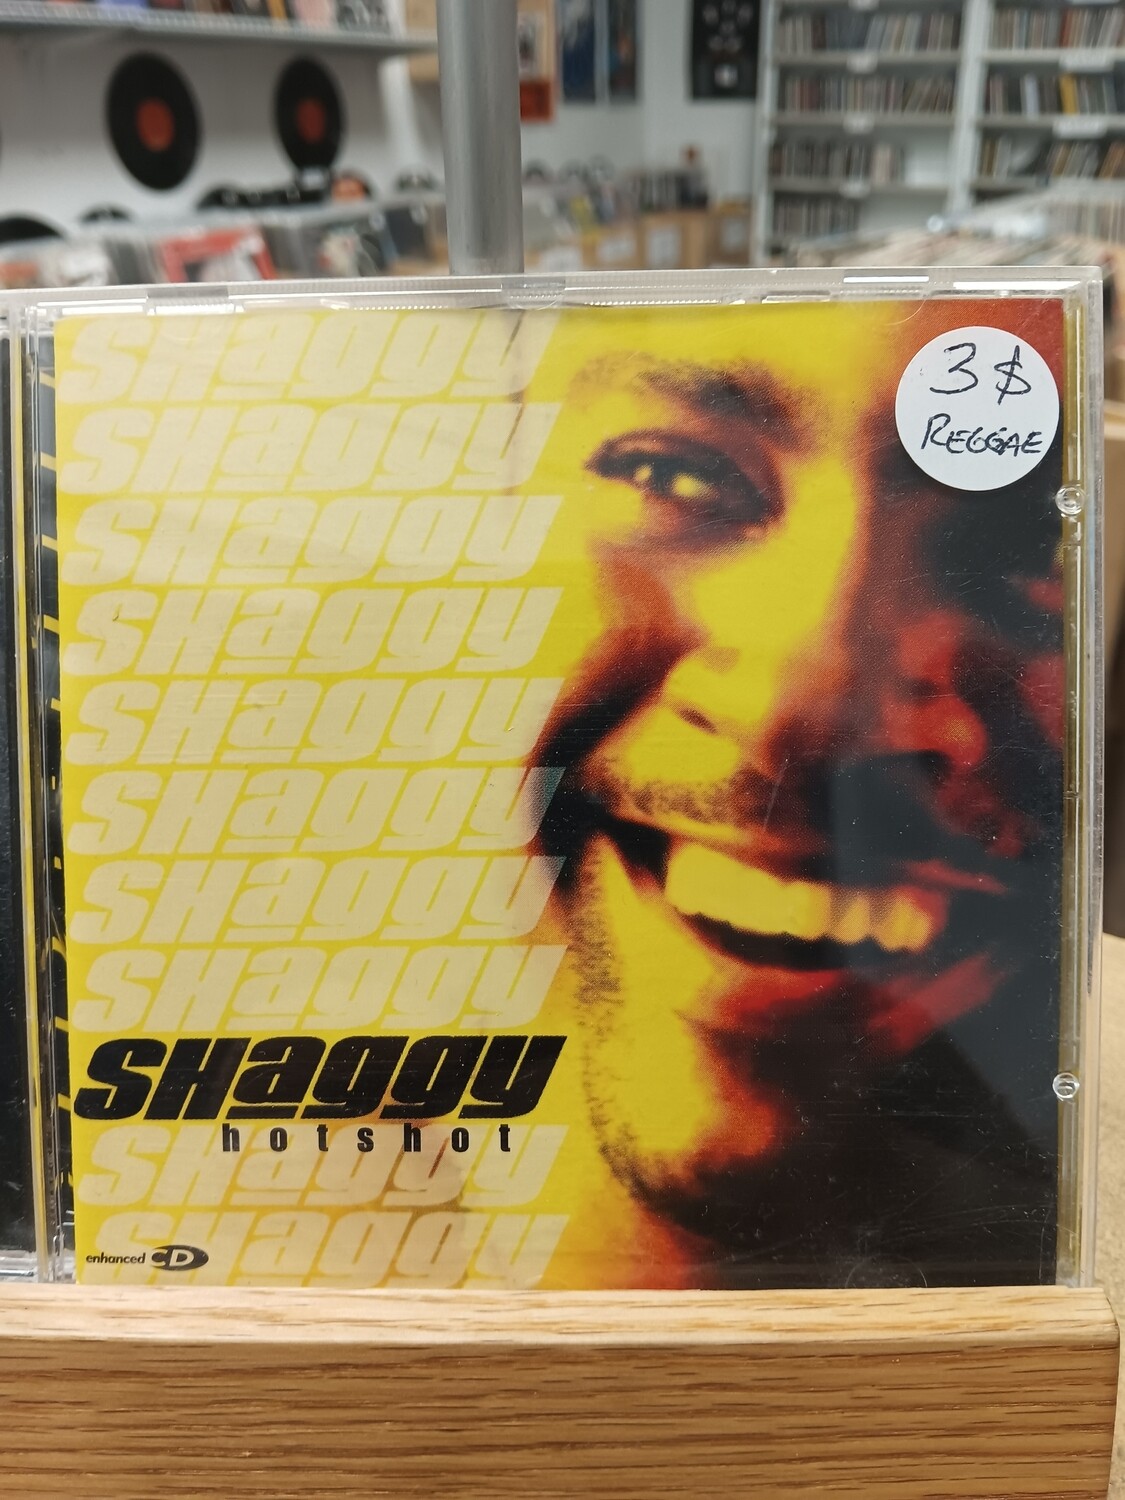 SHAGGY - Hotshot (CD)